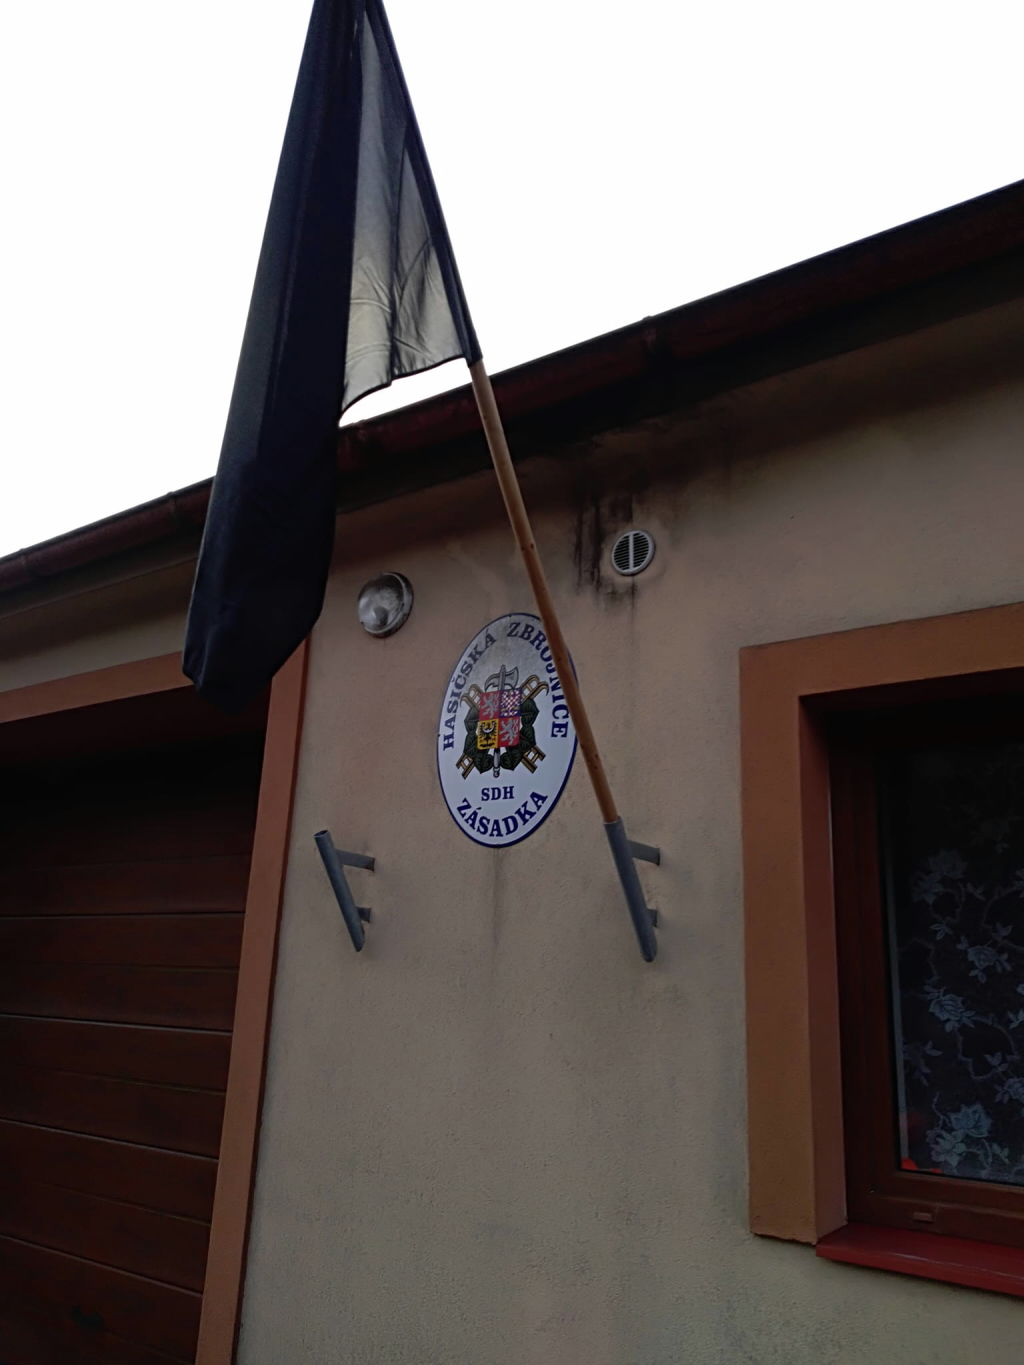 Černá vlajka zavlála na zbrojnici v Zásadce u Bosně. Foto: SDH Zásadka